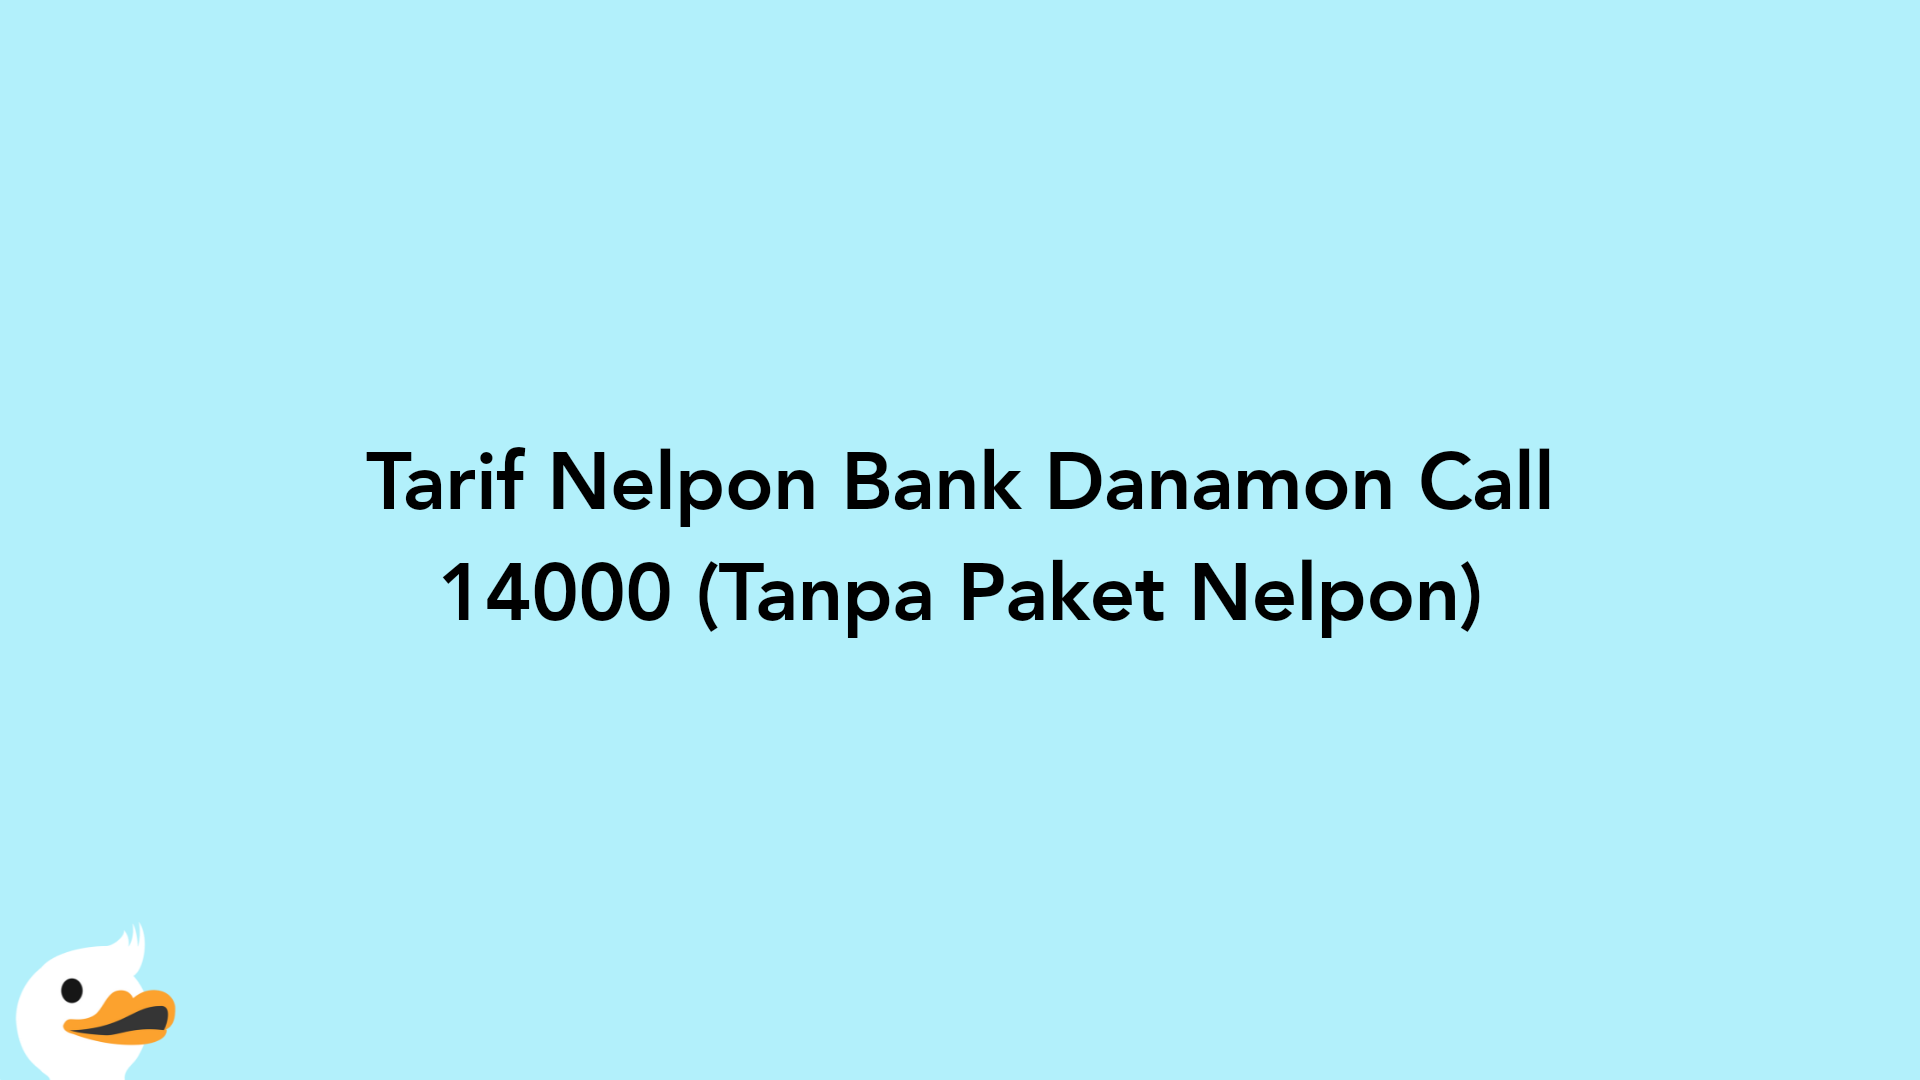 Tarif Nelpon Bank Danamon Call 14000 (Tanpa Paket Nelpon)